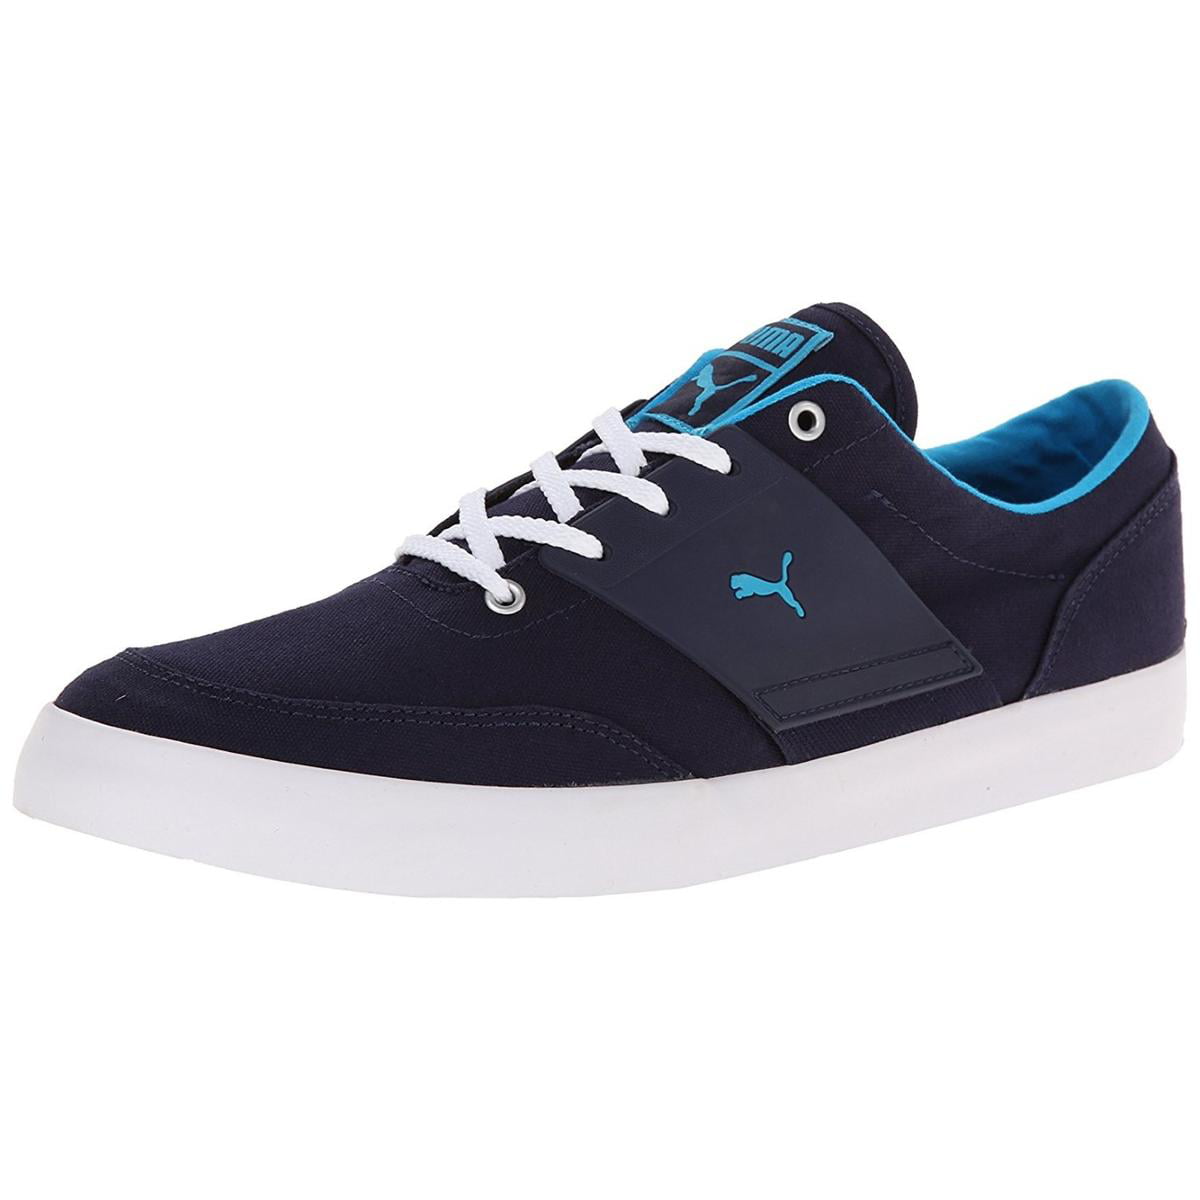 Puma El Ace 4 TXT Mens Navy/Light Blue Sneakers - Walmart.com